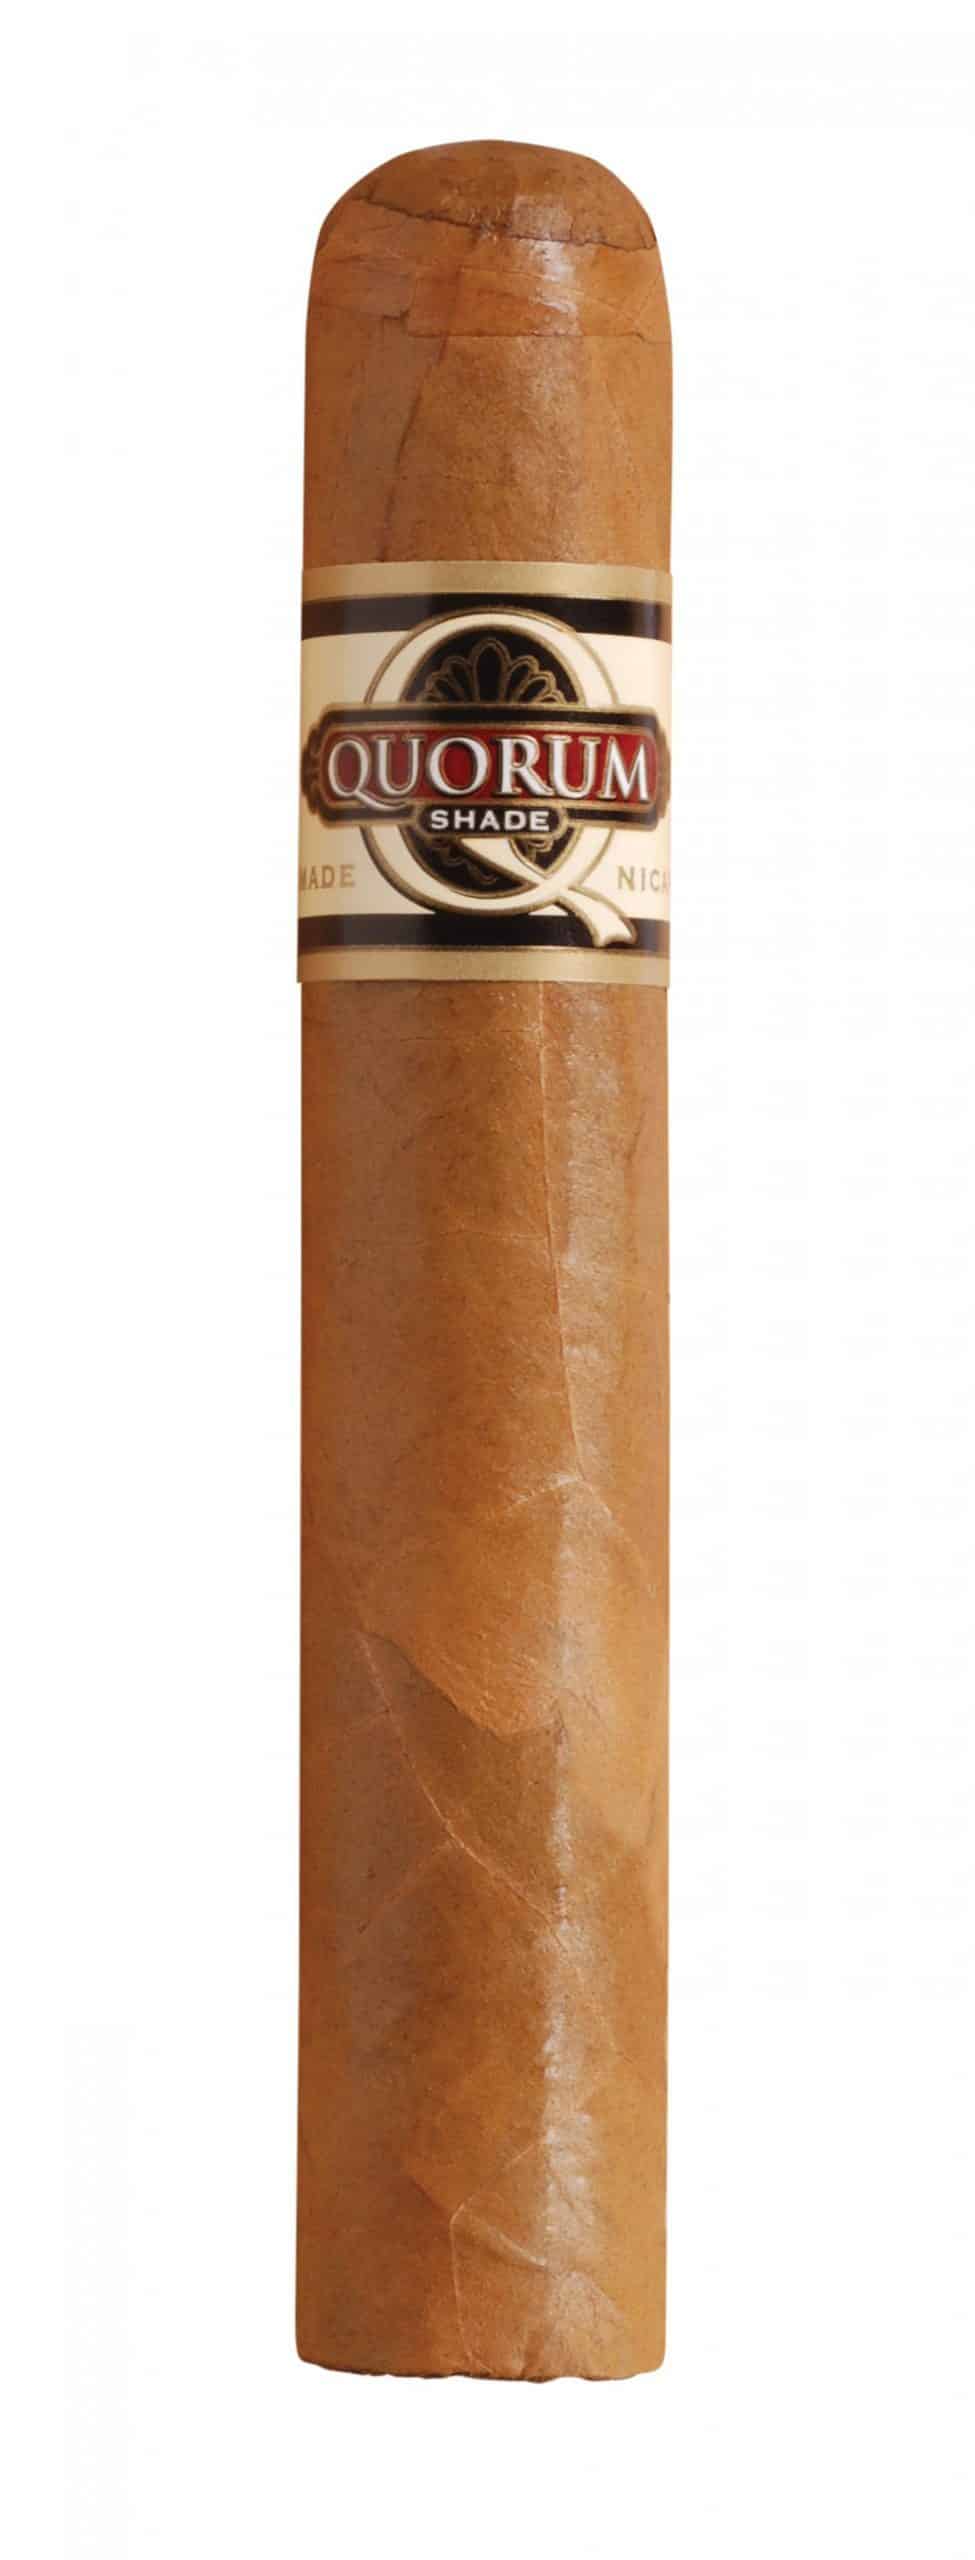 quorum shade robusto single cigar